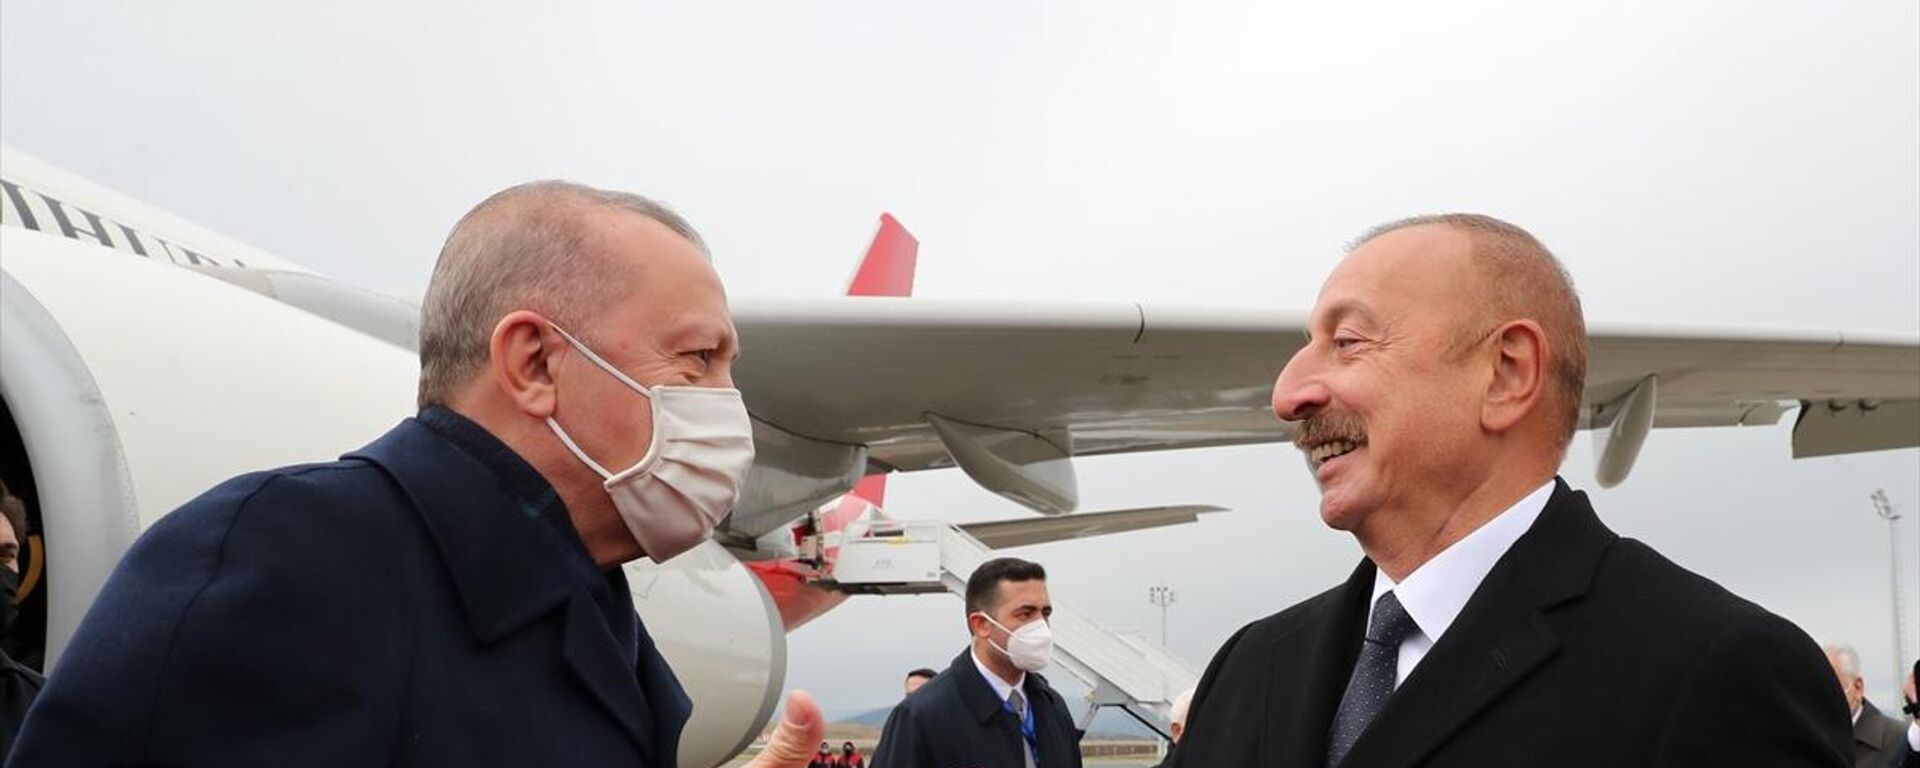 Cumhurbaşkanı Recep Tayyip Erdoğan, Azerbaycan'a geldi. Erdoğan, Fuzuli Uluslararası Havalimanı'na inen ilk devlet başkanı oldu. - Sputnik Türkiye, 1920, 26.10.2021